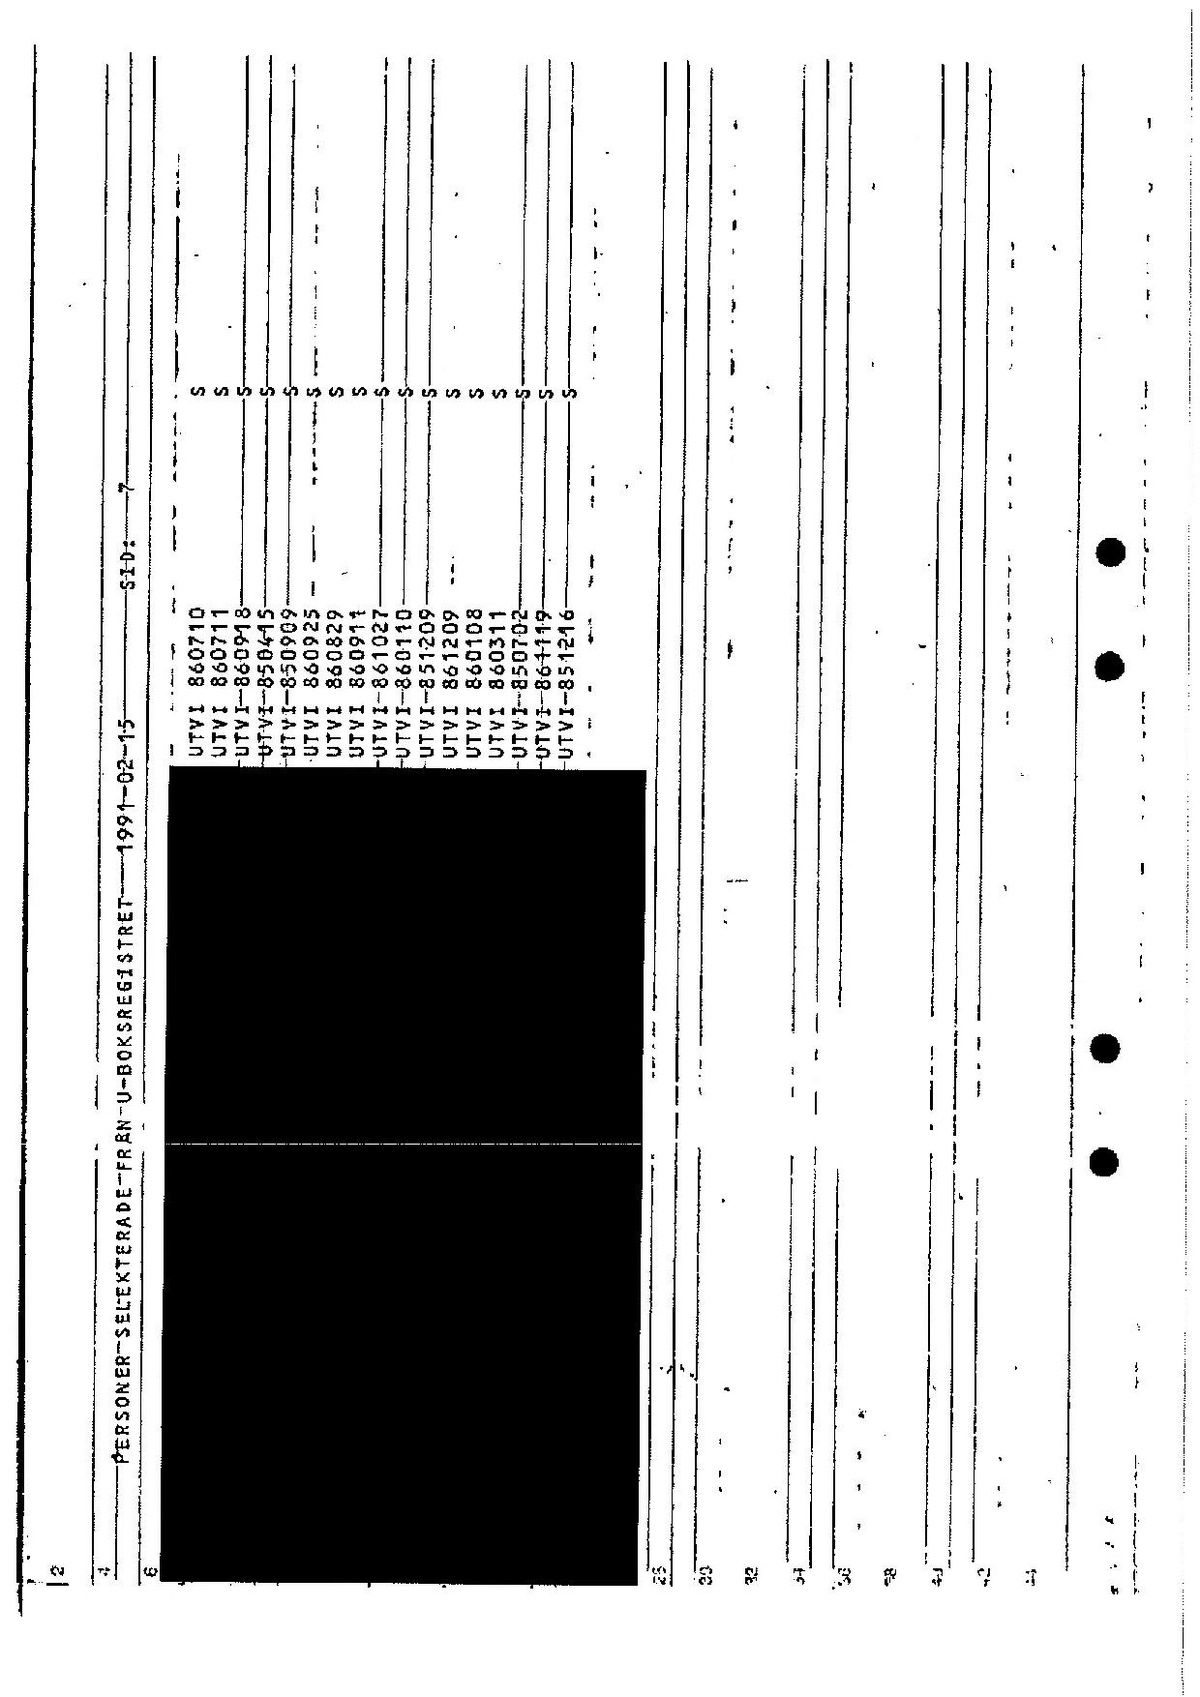 Pol-1991-02-18 A13687-00 Lista utvisningar samt slagning.pdf